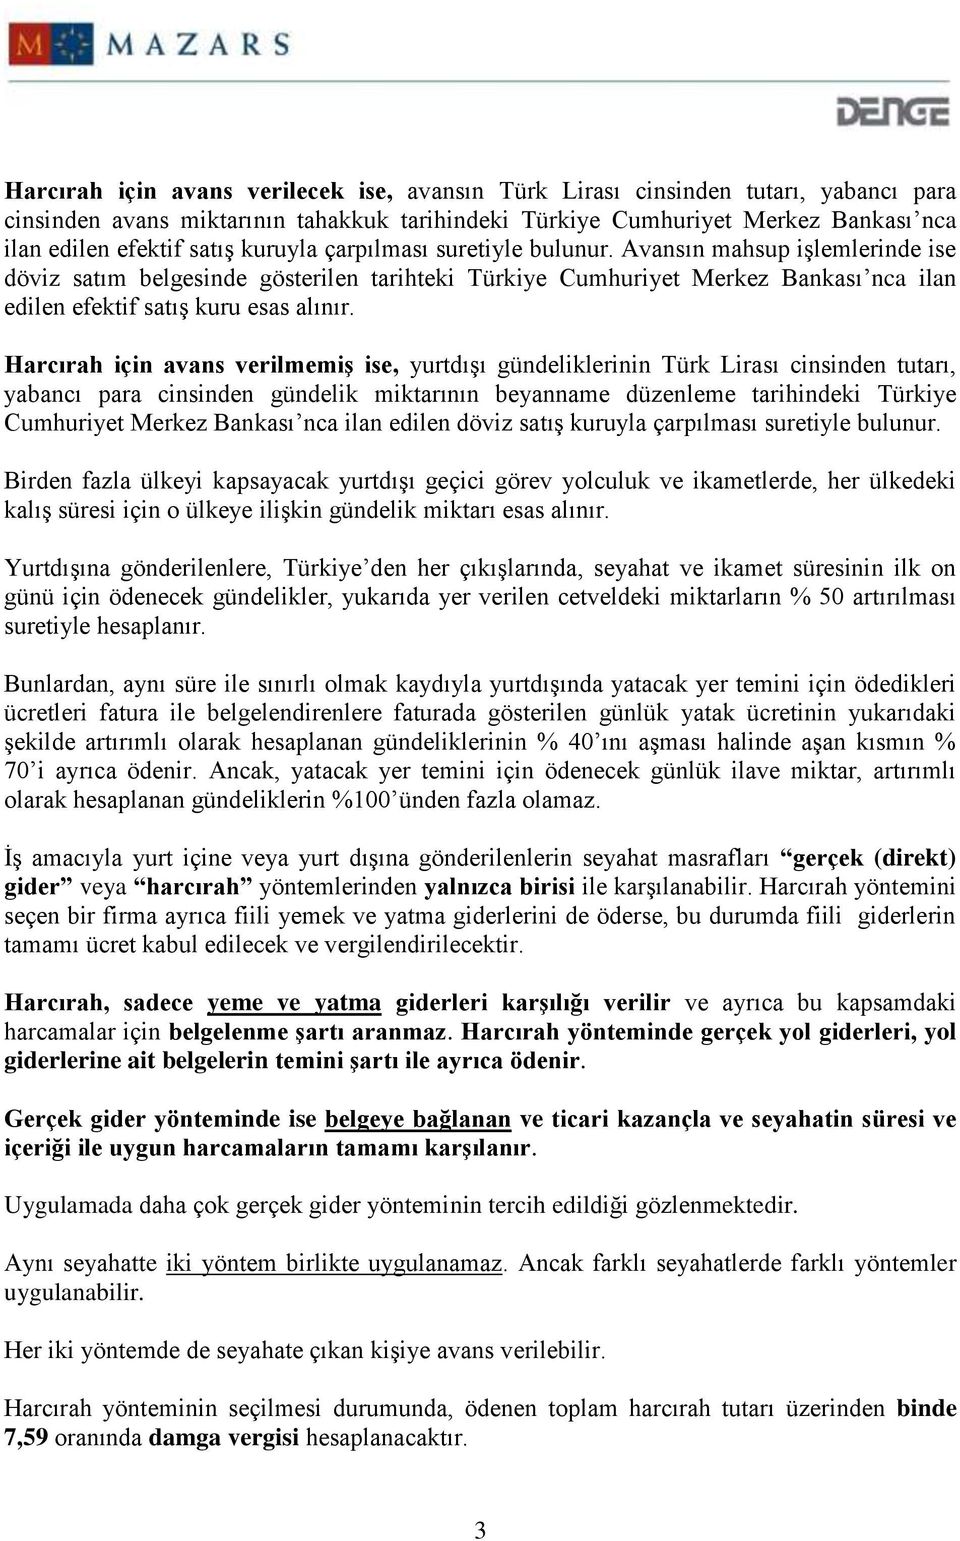 Harcırah için avans verilmemiş ise, yurtdışı gündeliklerinin Türk Lirası cinsinden tutarı, yabancı para cinsinden gündelik miktarının beyanname düzenleme tarihindeki Türkiye Cumhuriyet Merkez Bankası